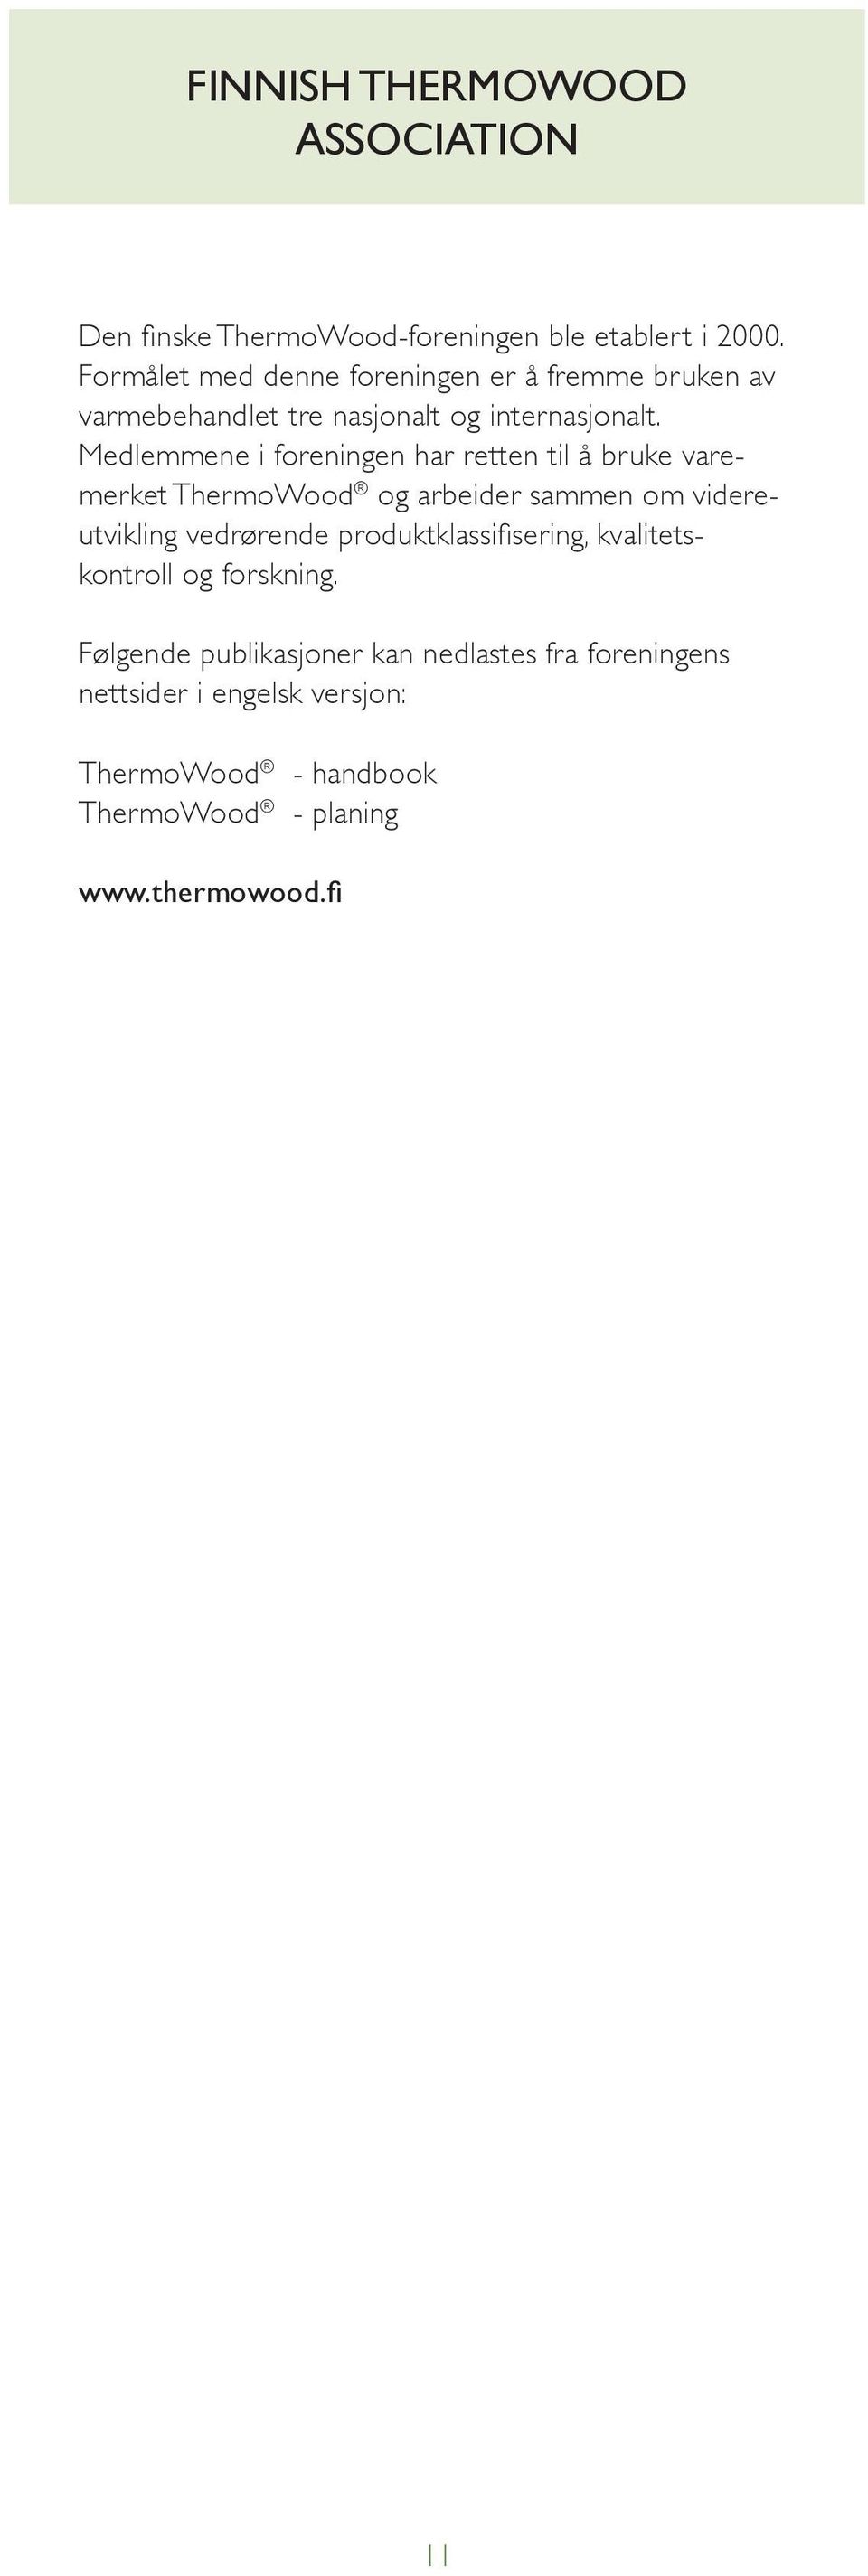 Medlemmene i foreningen har retten til å bruke varemerket ThermoWood og arbeider sammen om videreutvikling vedrørende